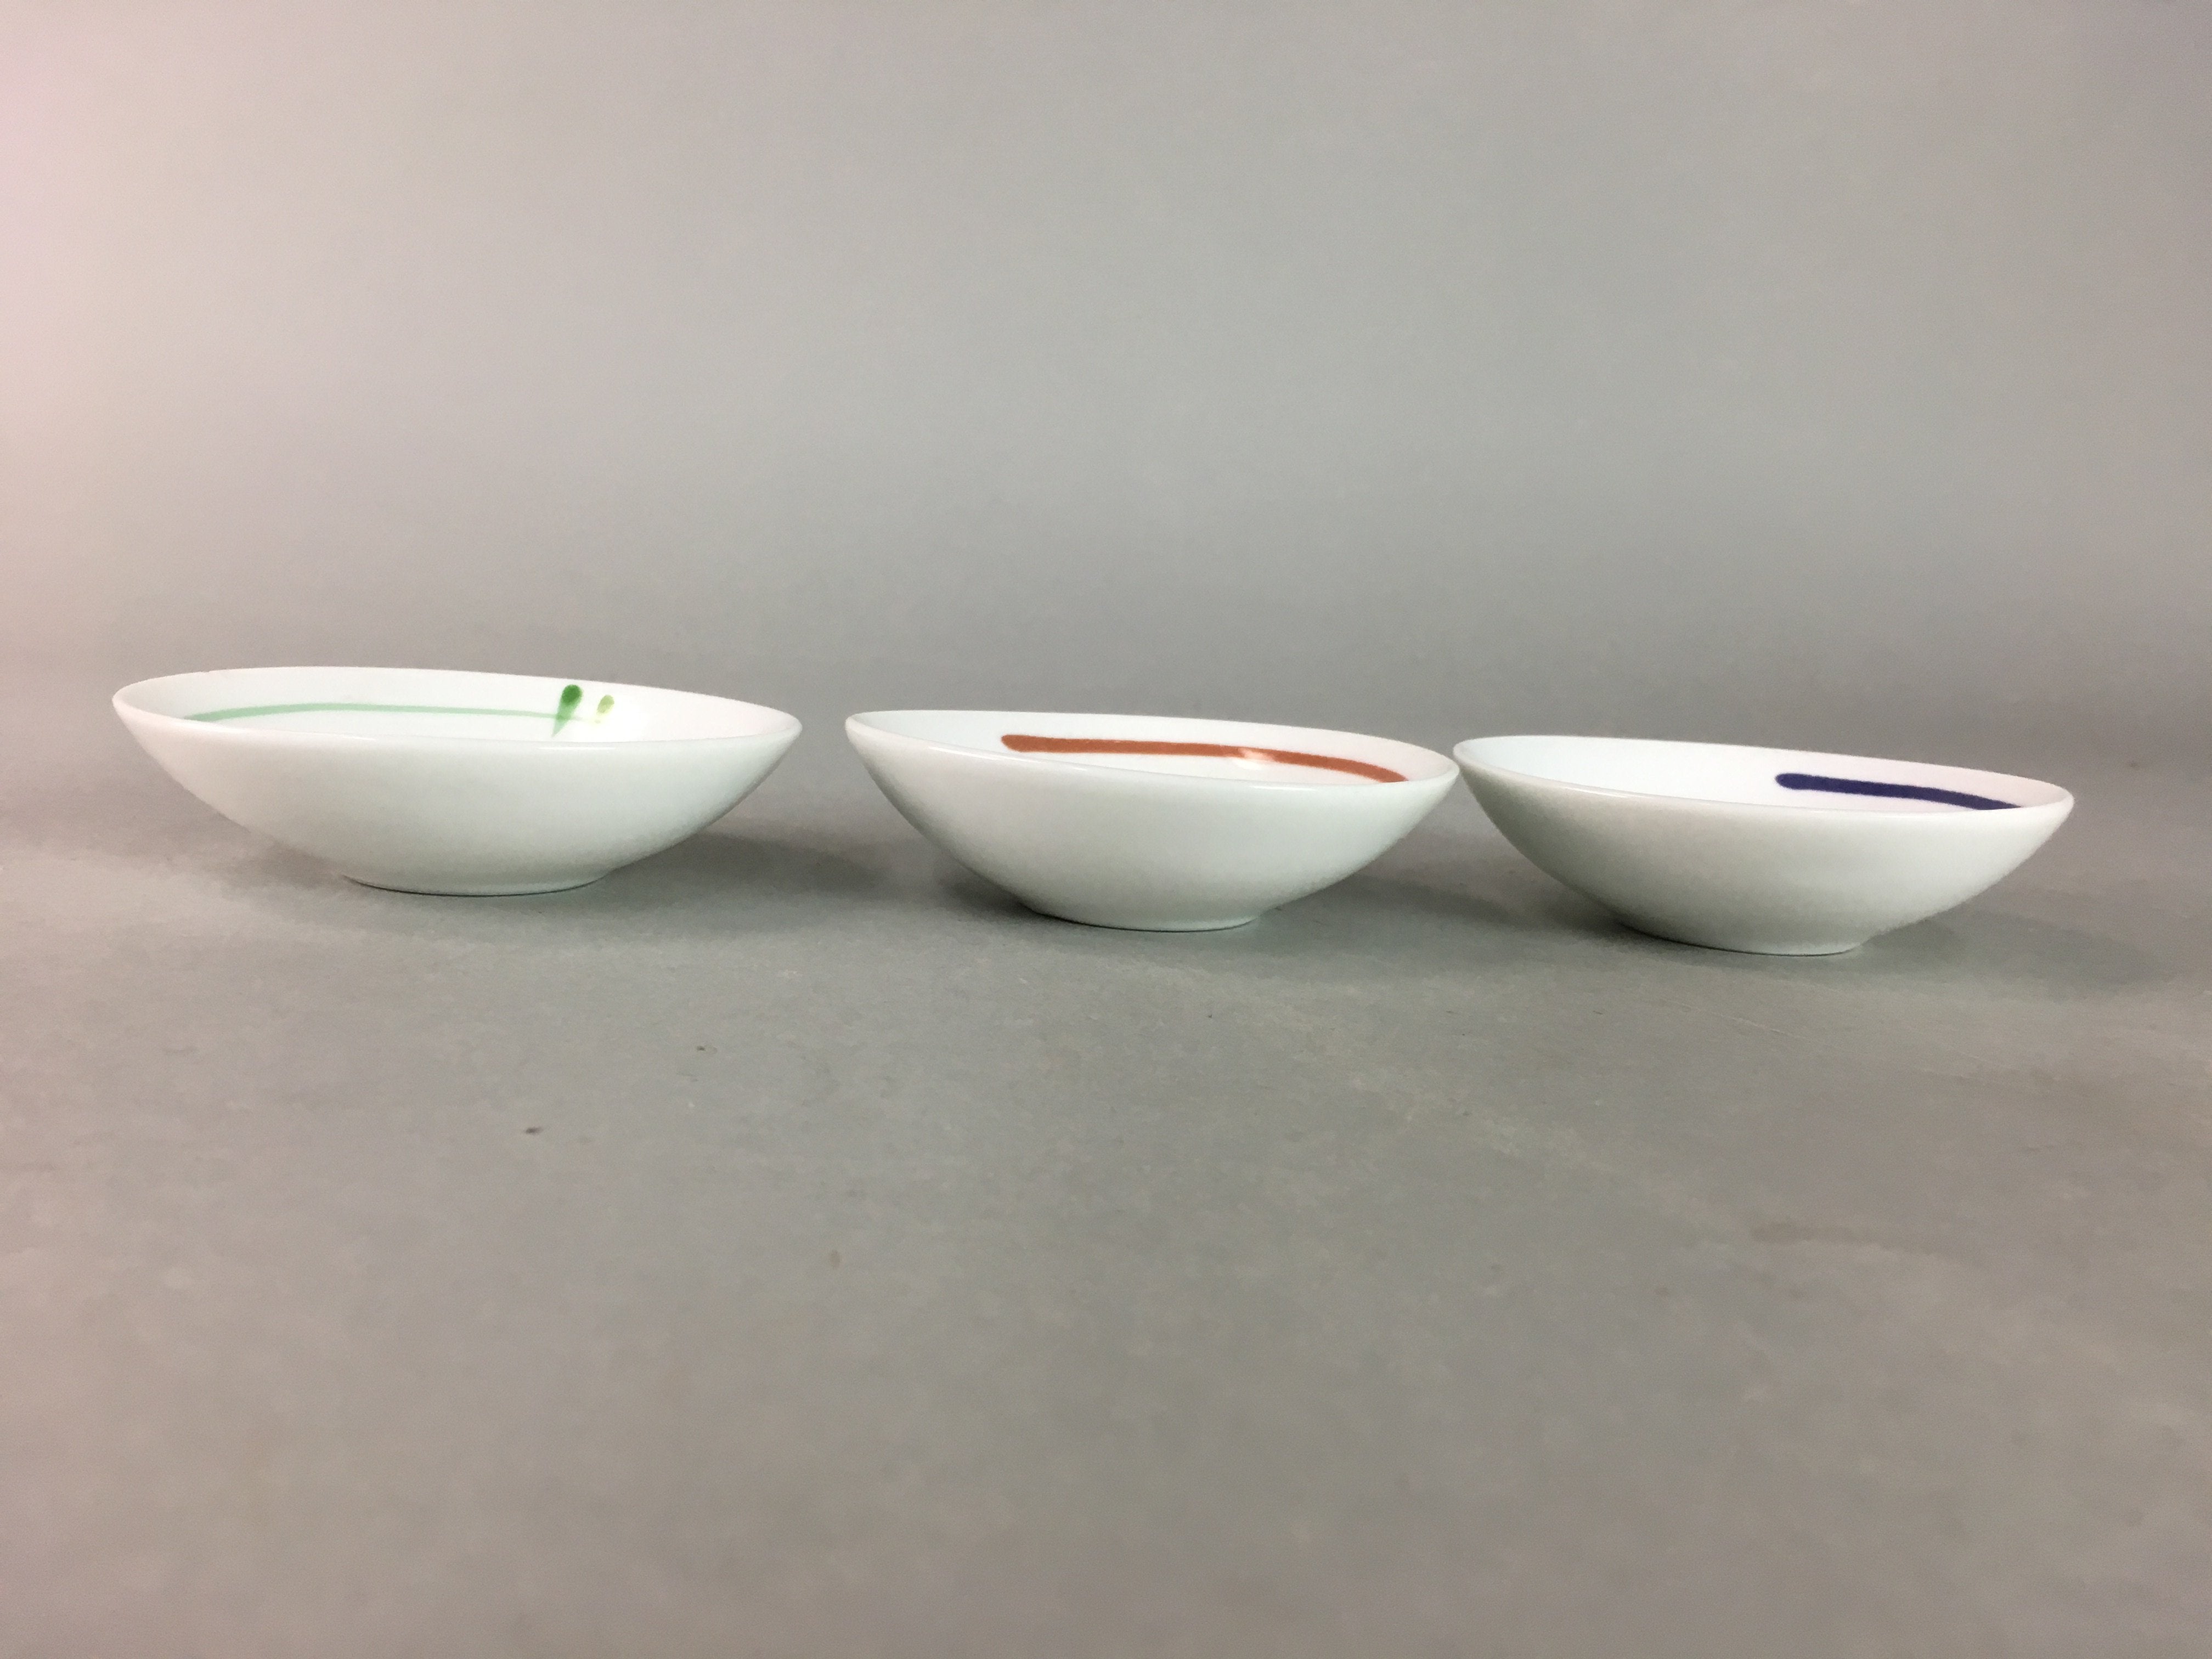 Japanese Small Bowl 3pc Set Vtg White Porcelain Vegetable Fruits Mamezara PT910